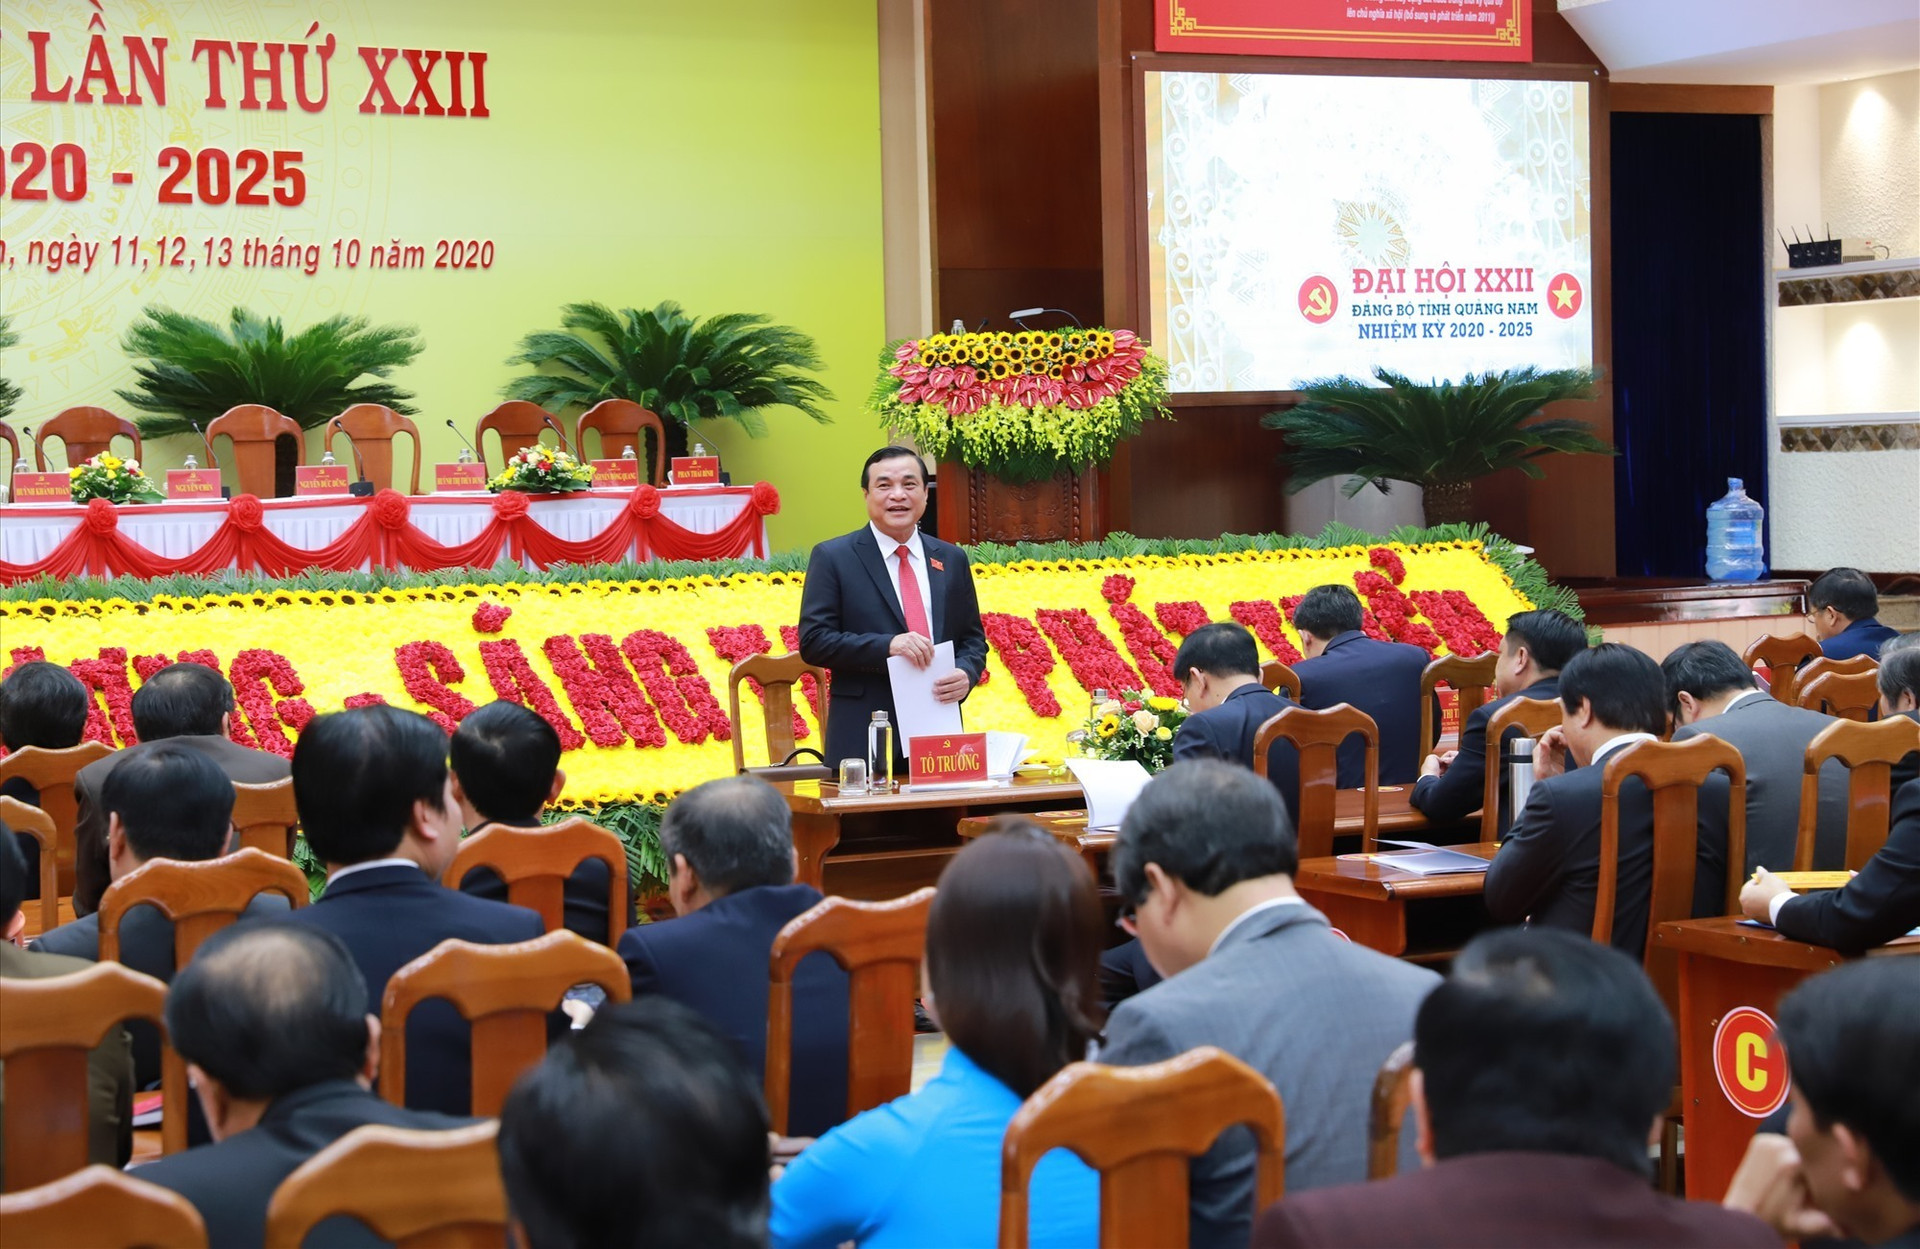 Đồng chí Phan Việt Cường - Ủy viên trung ương Đảng, Bí thư Tỉnh ủy (khóa XXI) điều hành thảo luận tại tổ.